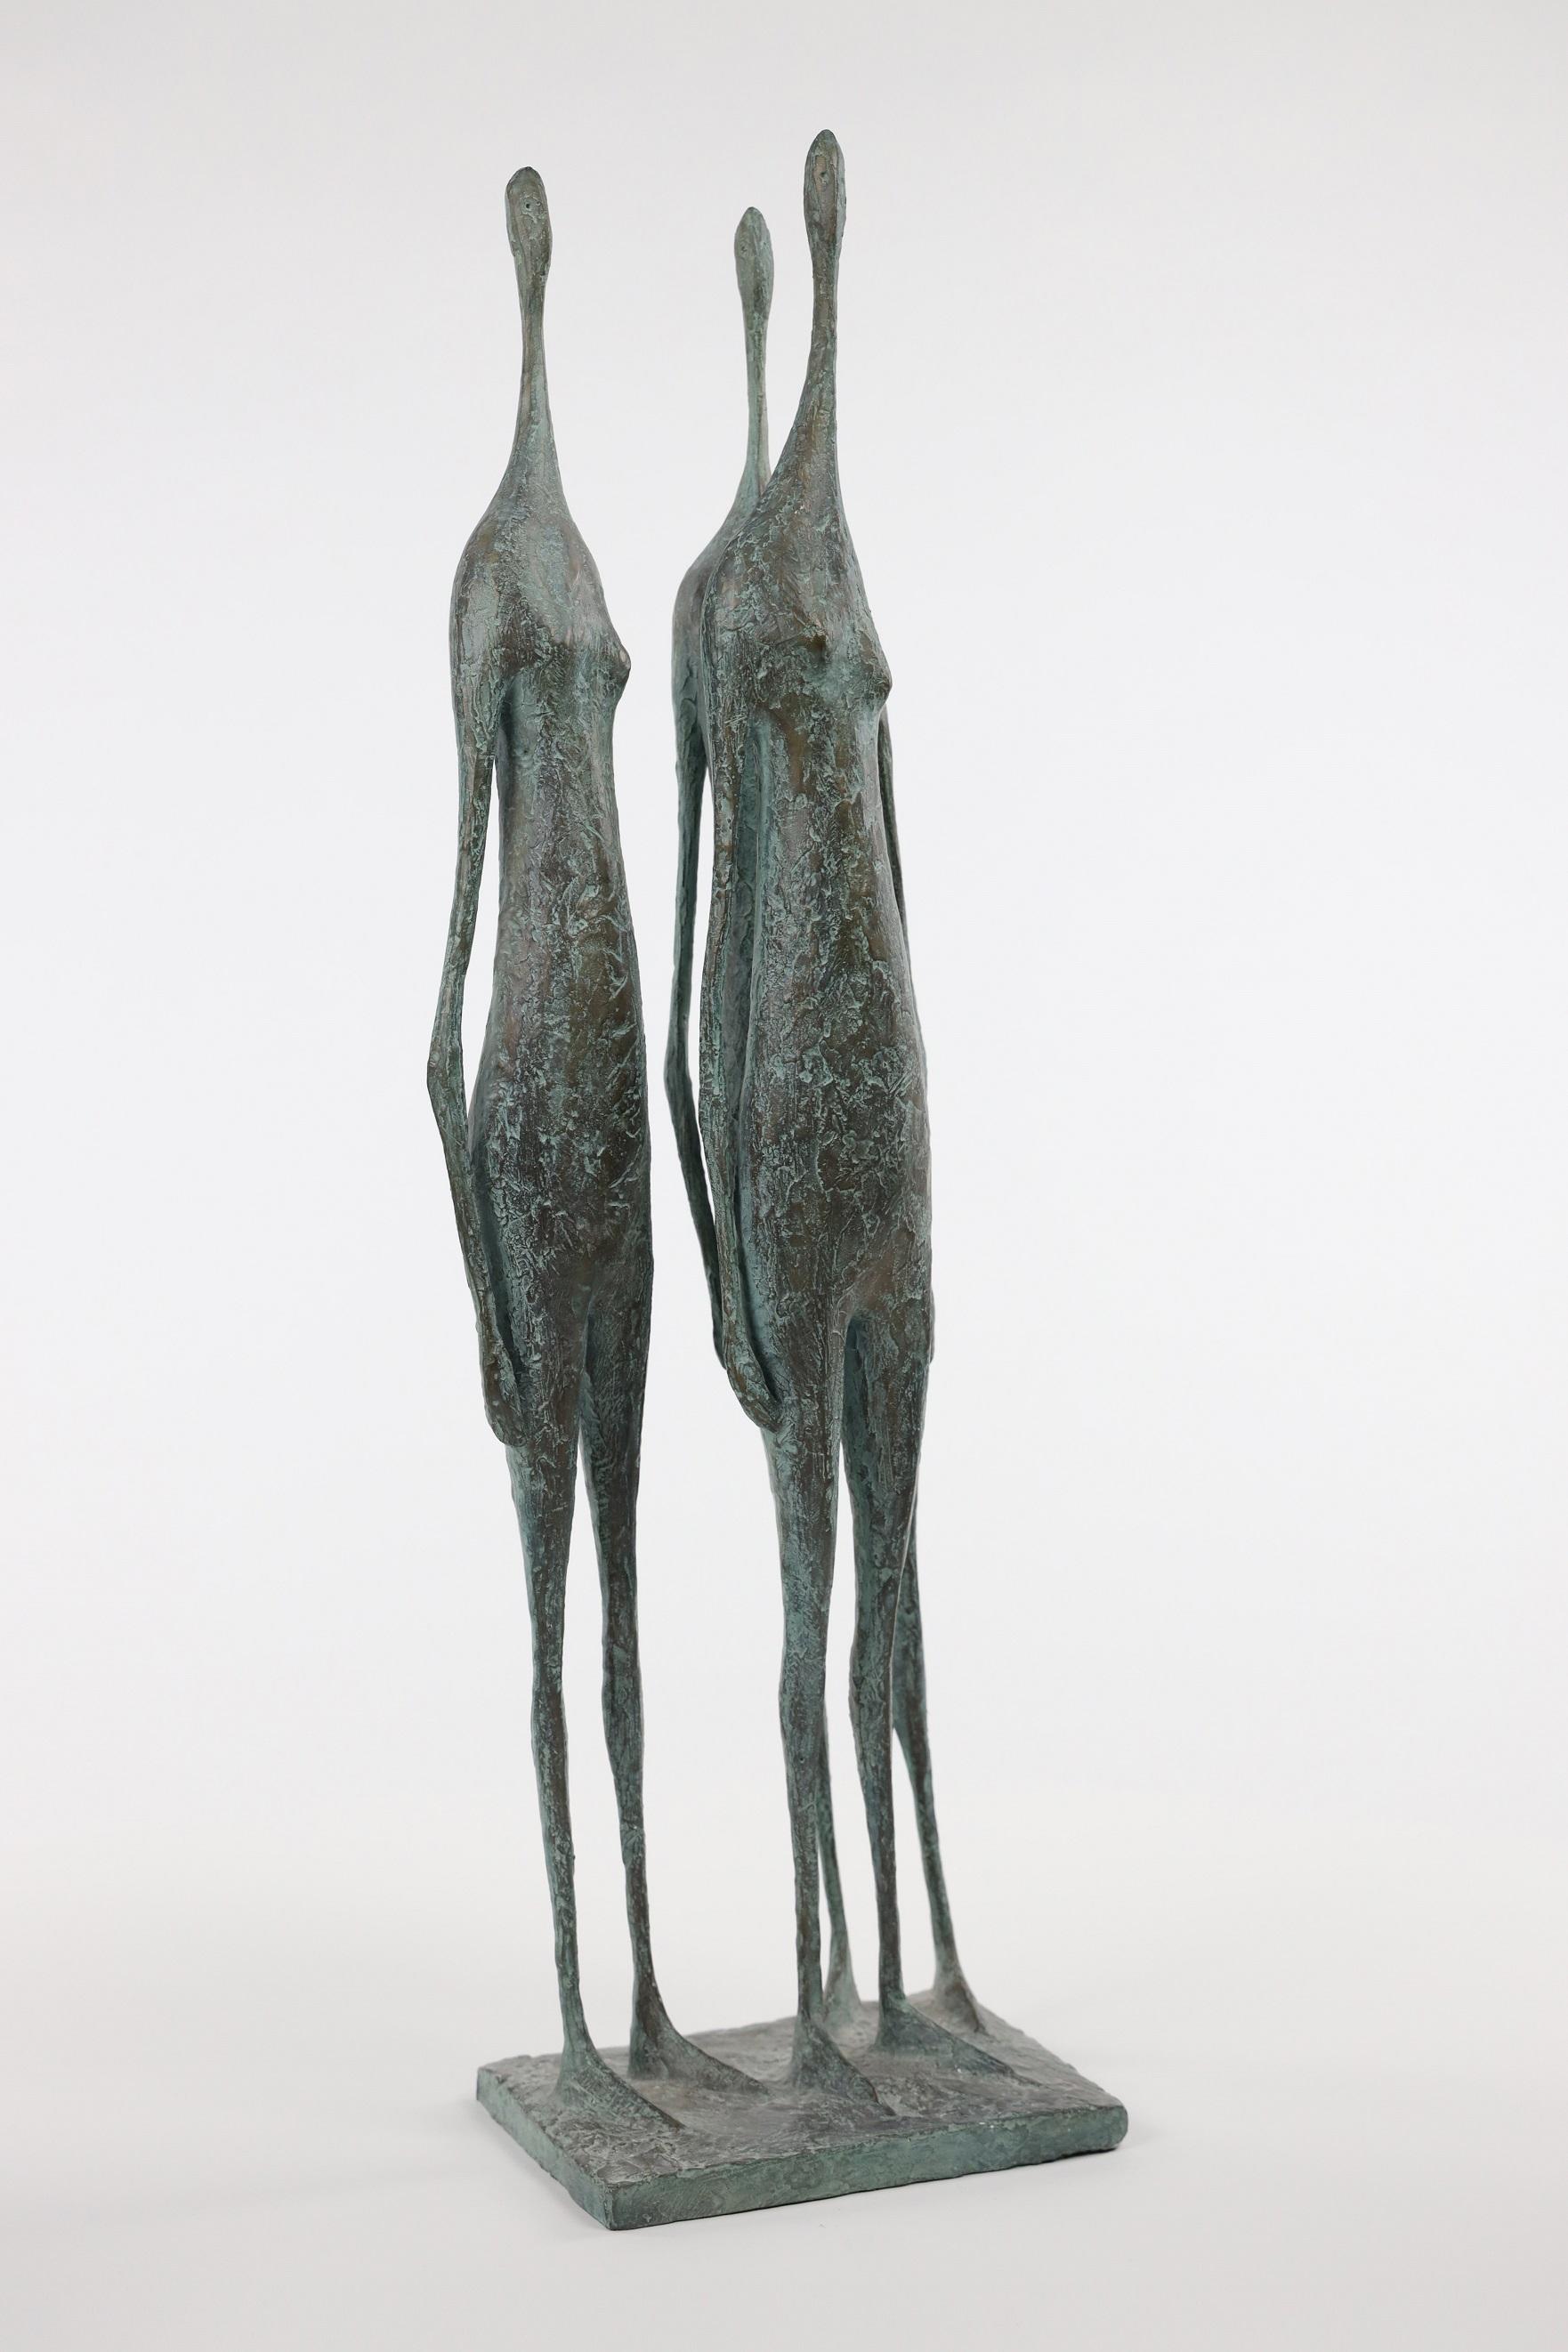 3 Standing Figures V est une sculpture en bronze de l'artiste contemporain français Pierre Yermia, dont les dimensions sont de 63 × 18 × 14 cm (24.8 × 7.1 × 5.5 in). 
La sculpture est signée et numérotée, elle fait partie d'une édition limitée à 8